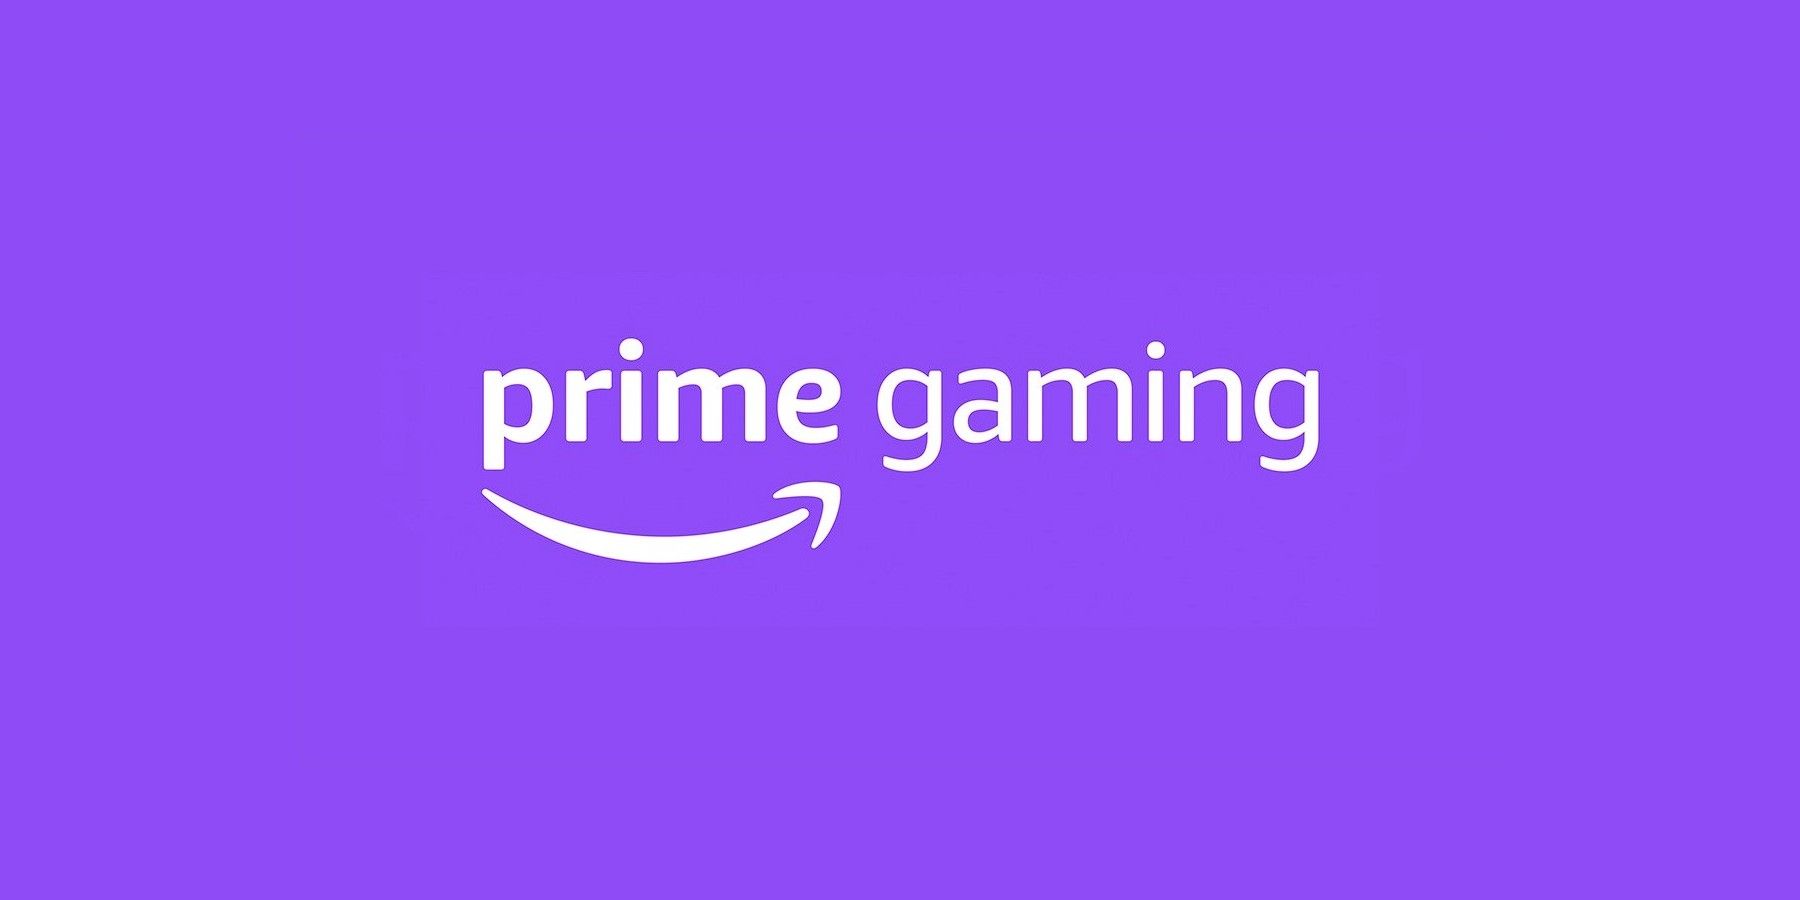 Prime Gaming For November 2020 Rewards Star Mythological Games